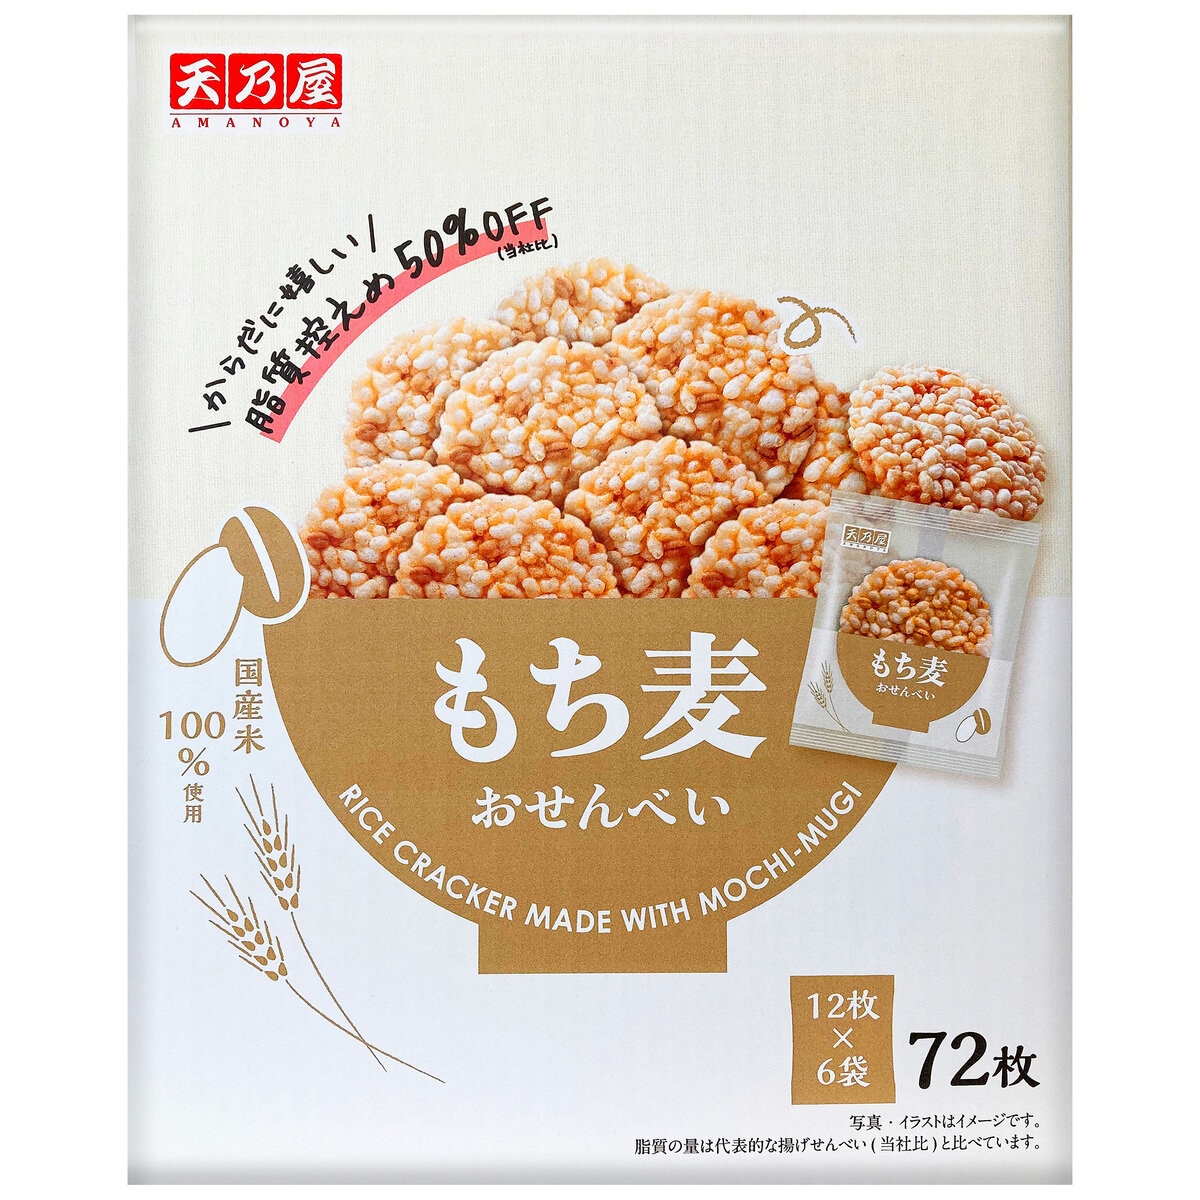 天乃屋 もち麦おせんべい 72枚入り | Costco Japan